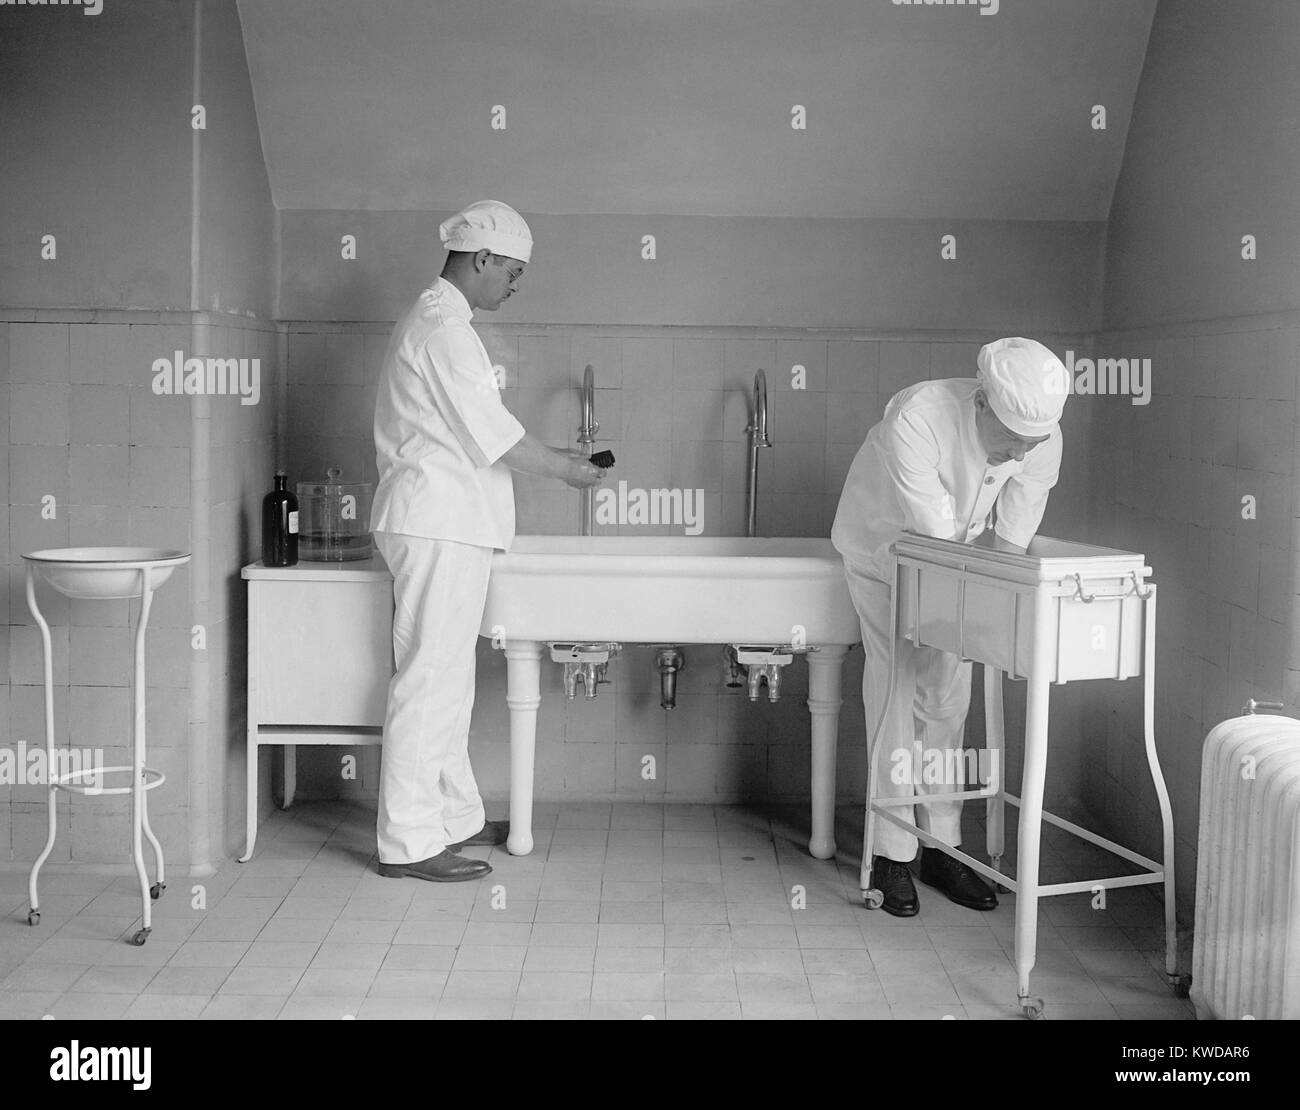 Chirurg und Anästhesist sorgfältig waschen ihre Hände und Unterarme in spezialisierten sinkt. Vor Antibiotika postoperative Infektion war Anlass zu ernster Besorgnis. 1922 in einem Krankenhaus in Washington, D.C. (BSLOC 2016 10 31) Stockfoto